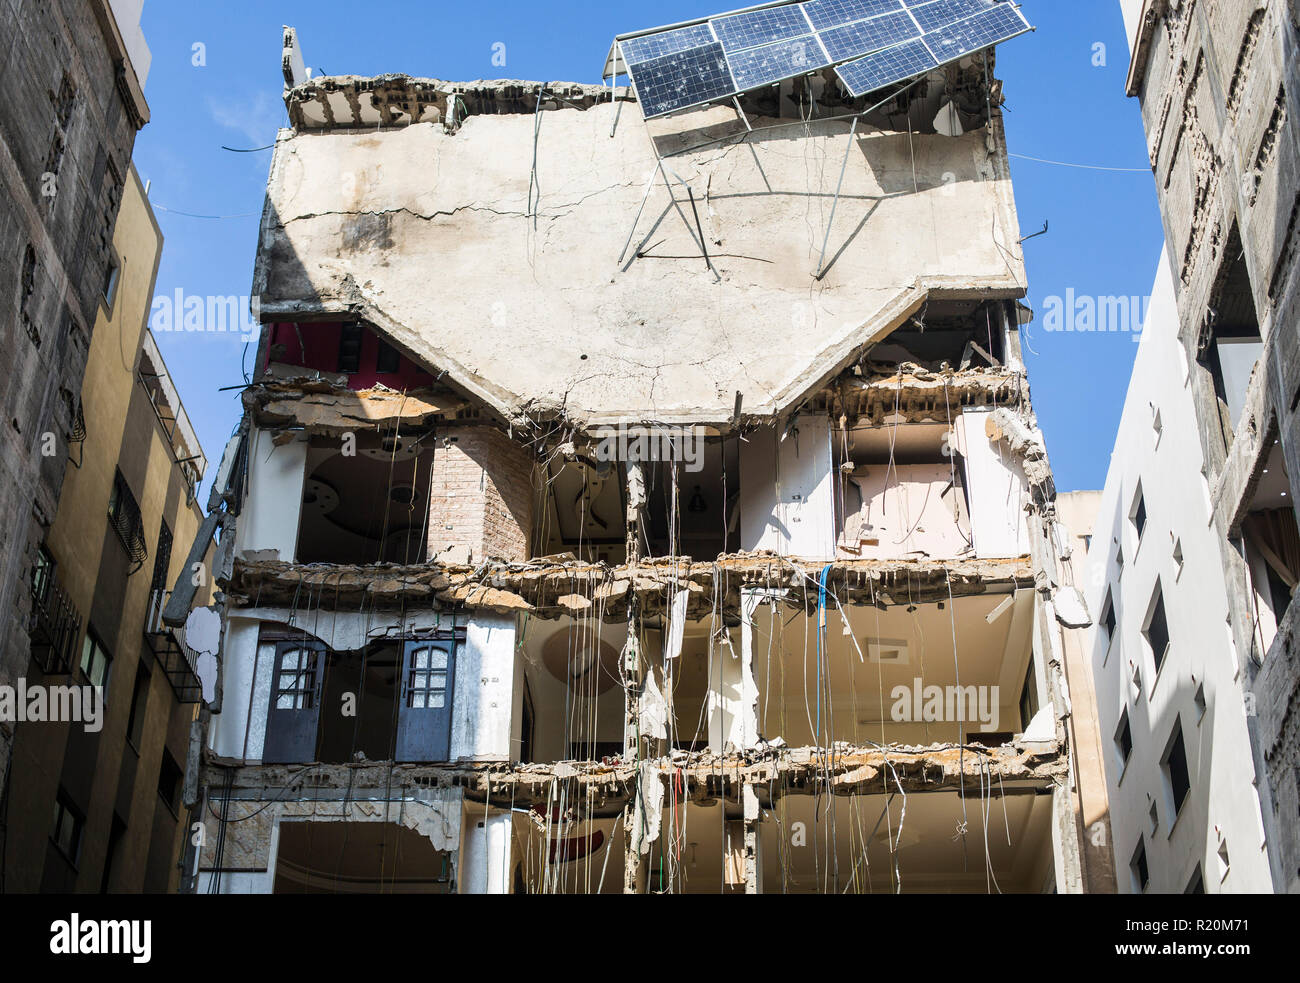 Ein Blick auf ein beschädigtes Gebäude, die während der israelischen Luft zerstört wurde, halte einen Waffenstillstand nach dem schlimmsten Eskalation zwischen Israel und dem Gazastreifen Aktivisten seit einem Krieg 2014 gehalten wurde, aber die Situation blieb volatil und das Abkommen löste scharfe Meinungsverschiedenheiten innerhalb der israelischen Regierung. Stockfoto